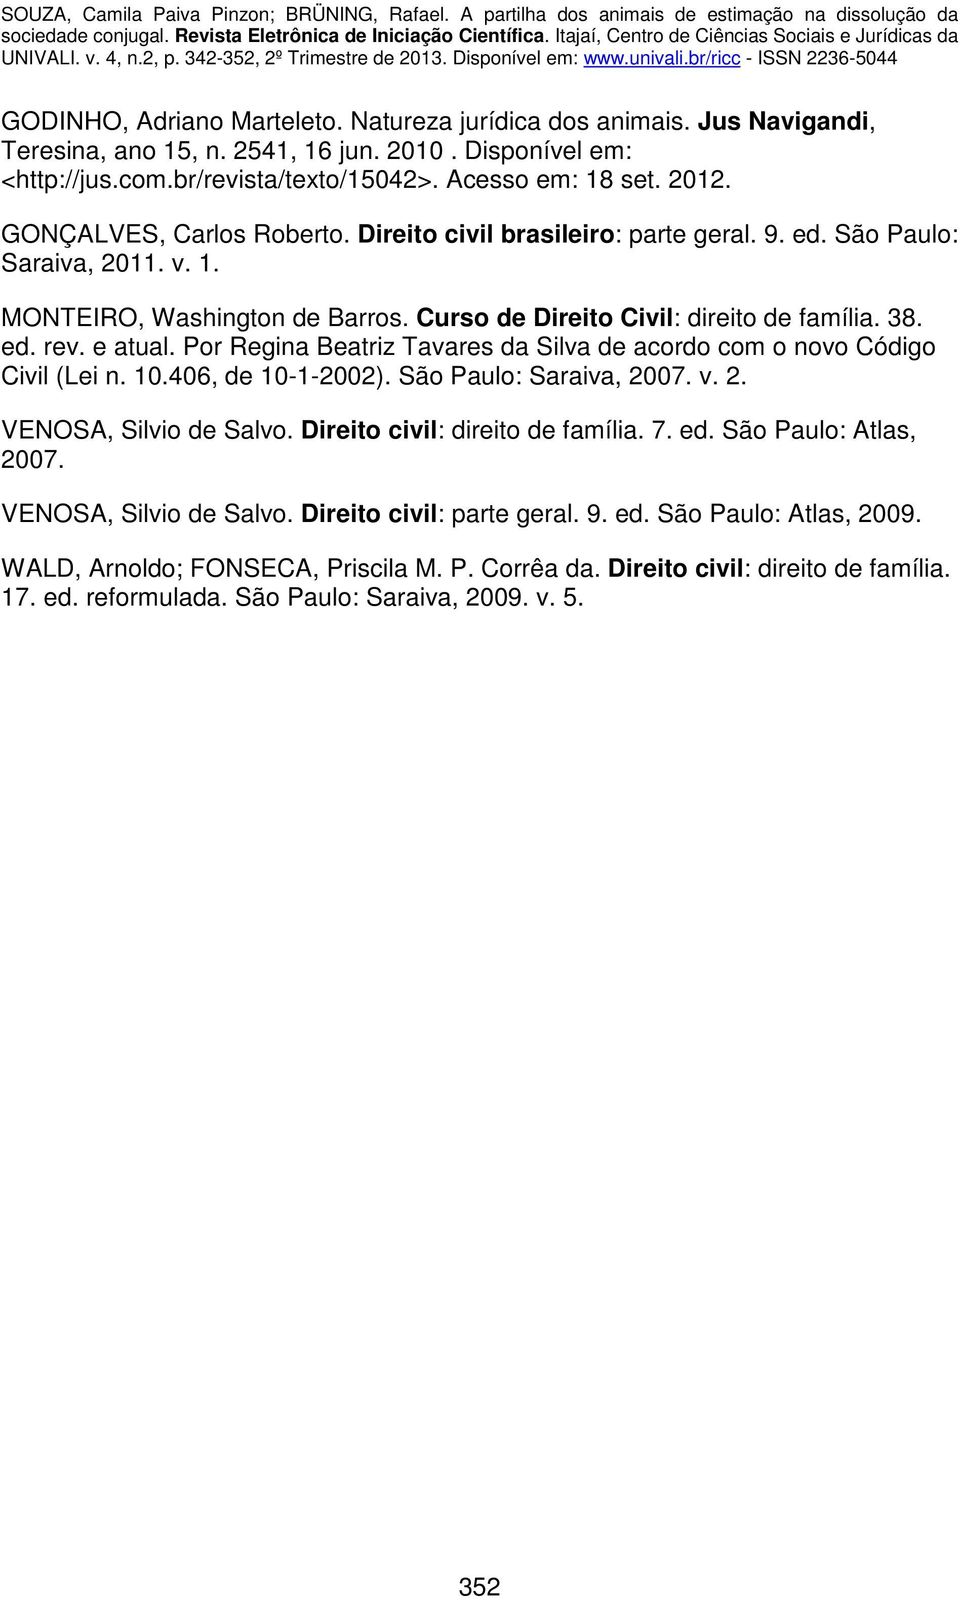 e atual. Por Regina Beatriz Tavares da Silva de acordo com o novo Código Civil (Lei n. 10.406, de 10-1-2002). São Paulo: Saraiva, 2007. v. 2. VENOSA, Silvio de Salvo.